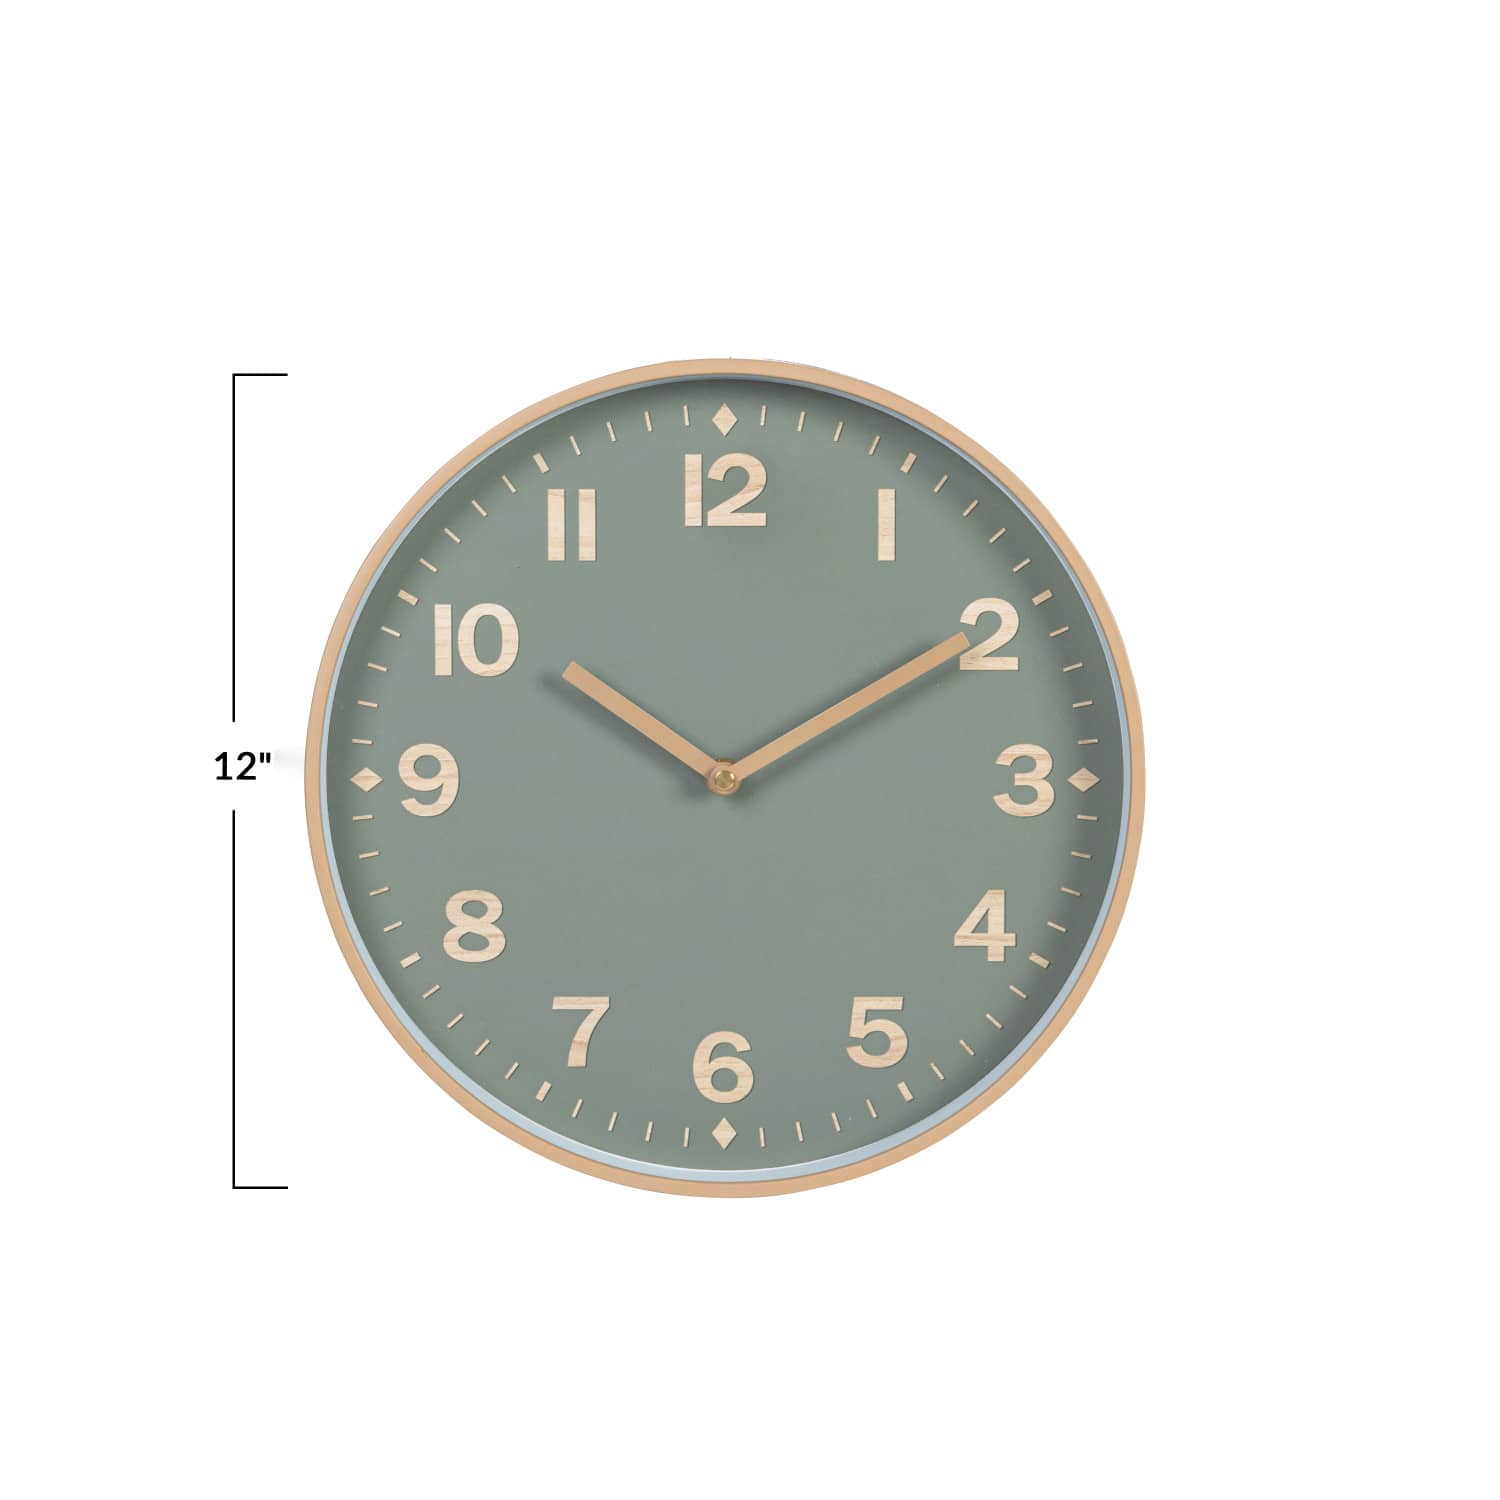 Green &#x26; Tan Round Plastic Wall Clock